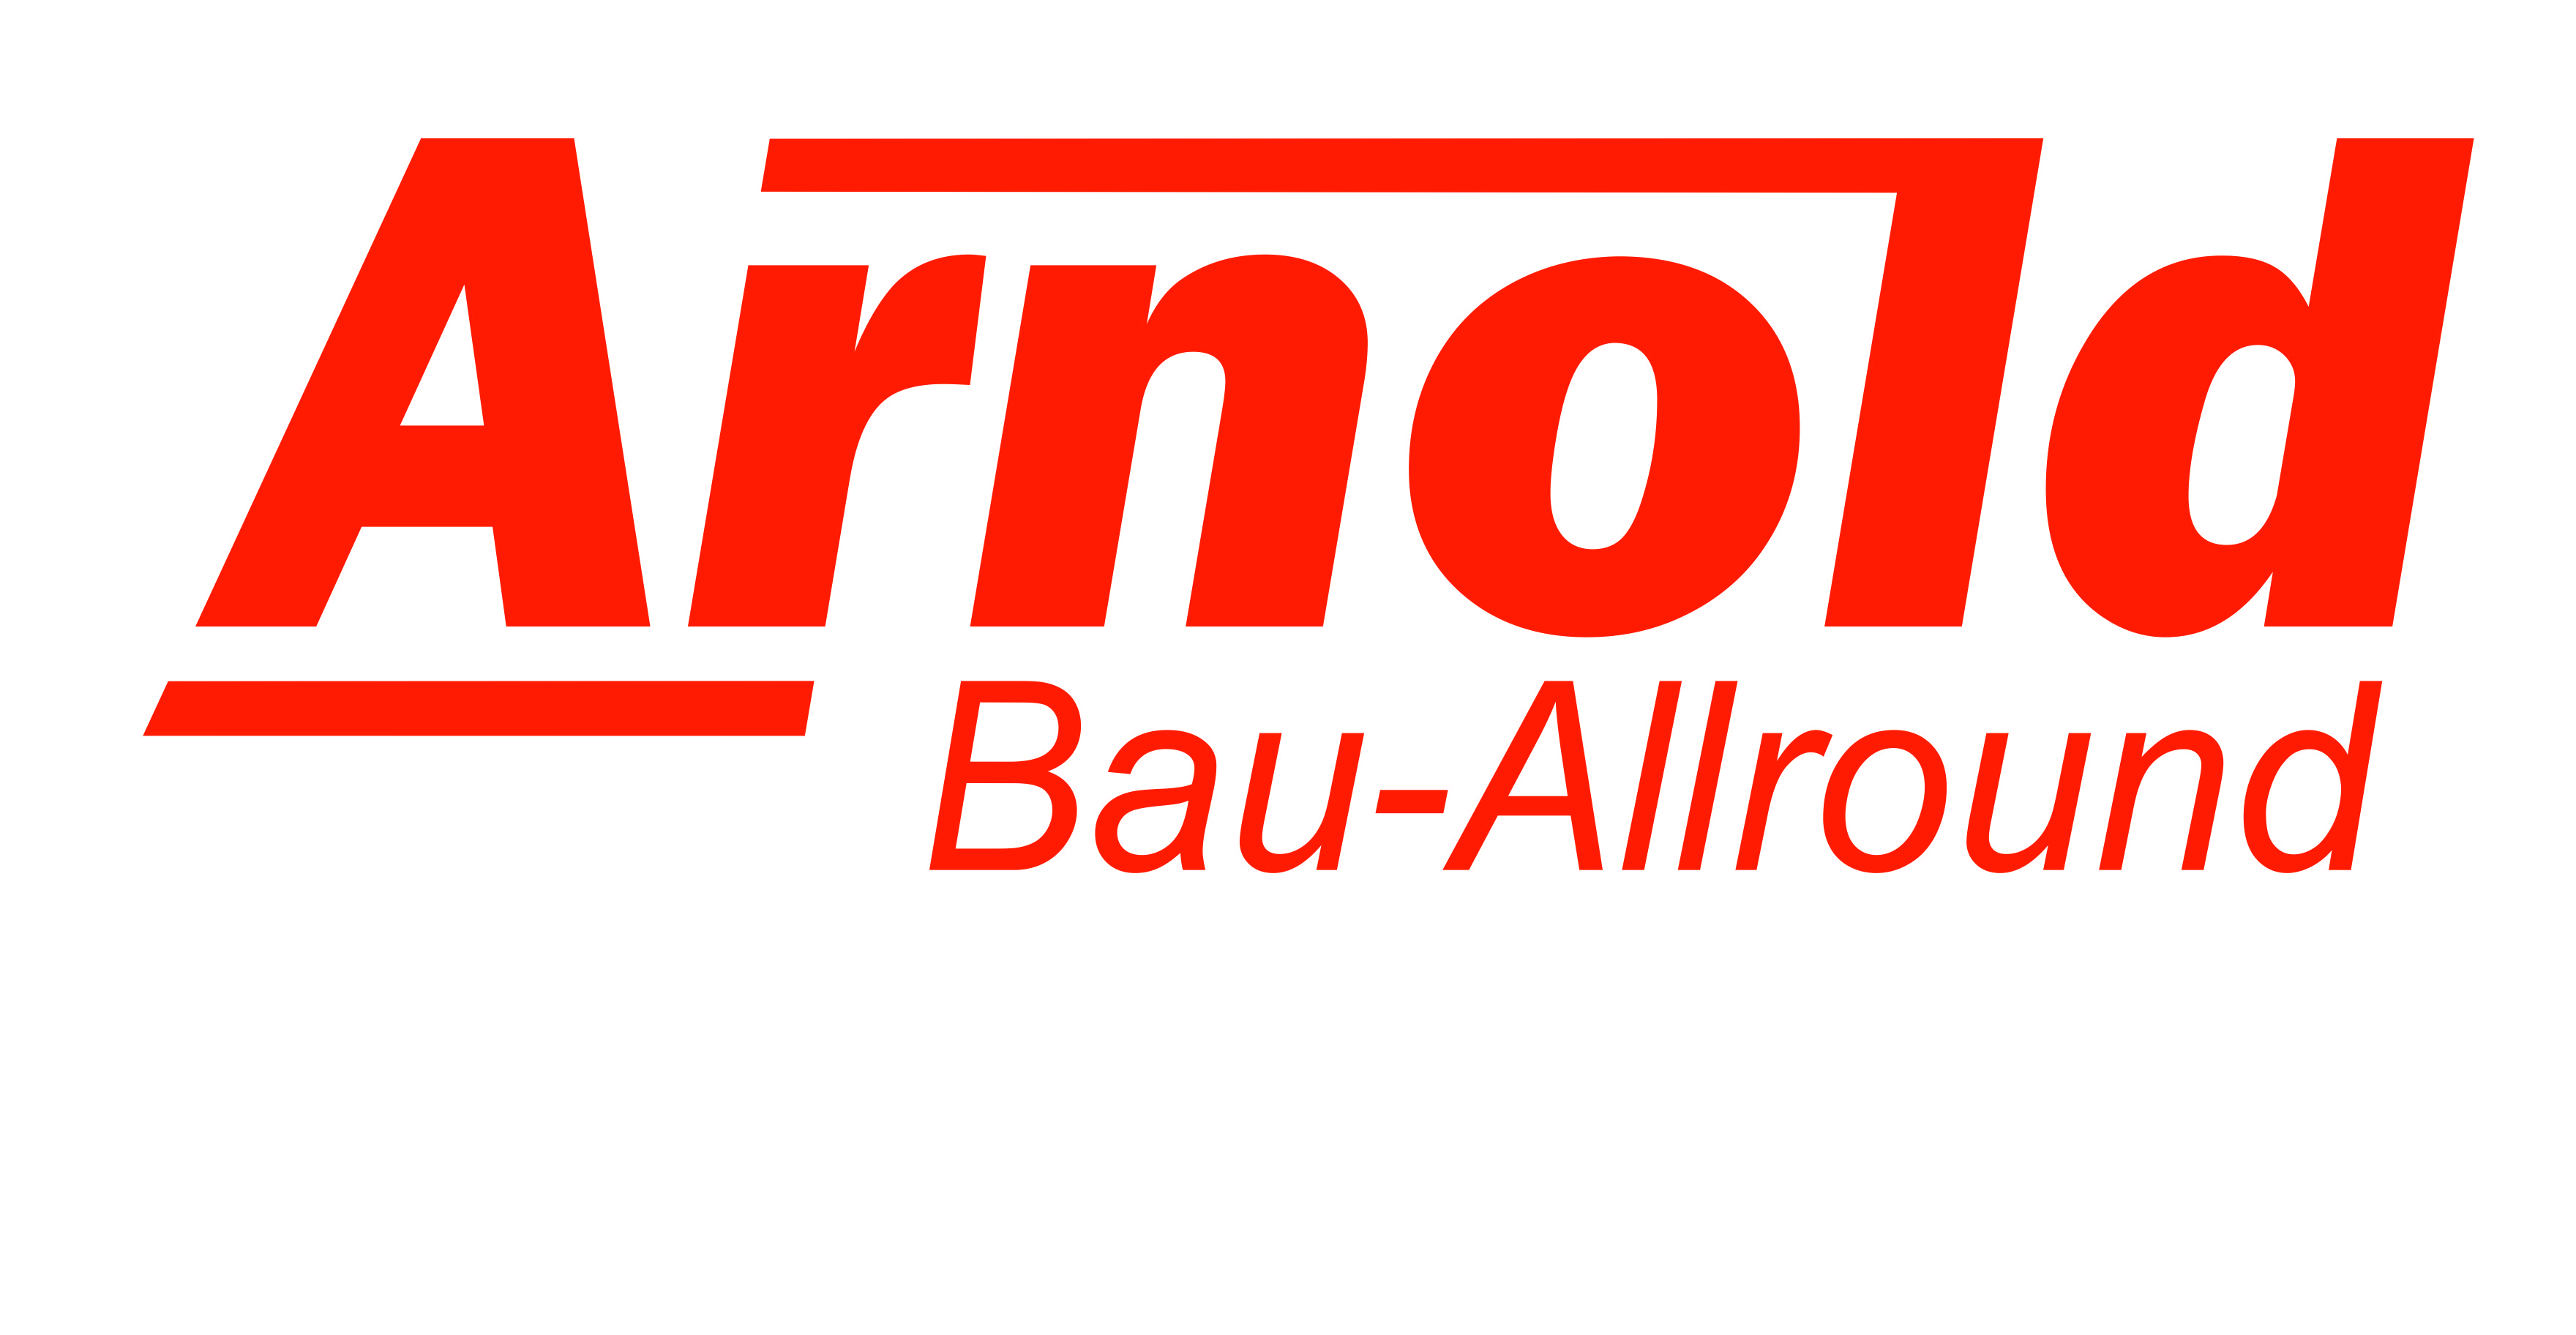 Arnold Bau-Allround